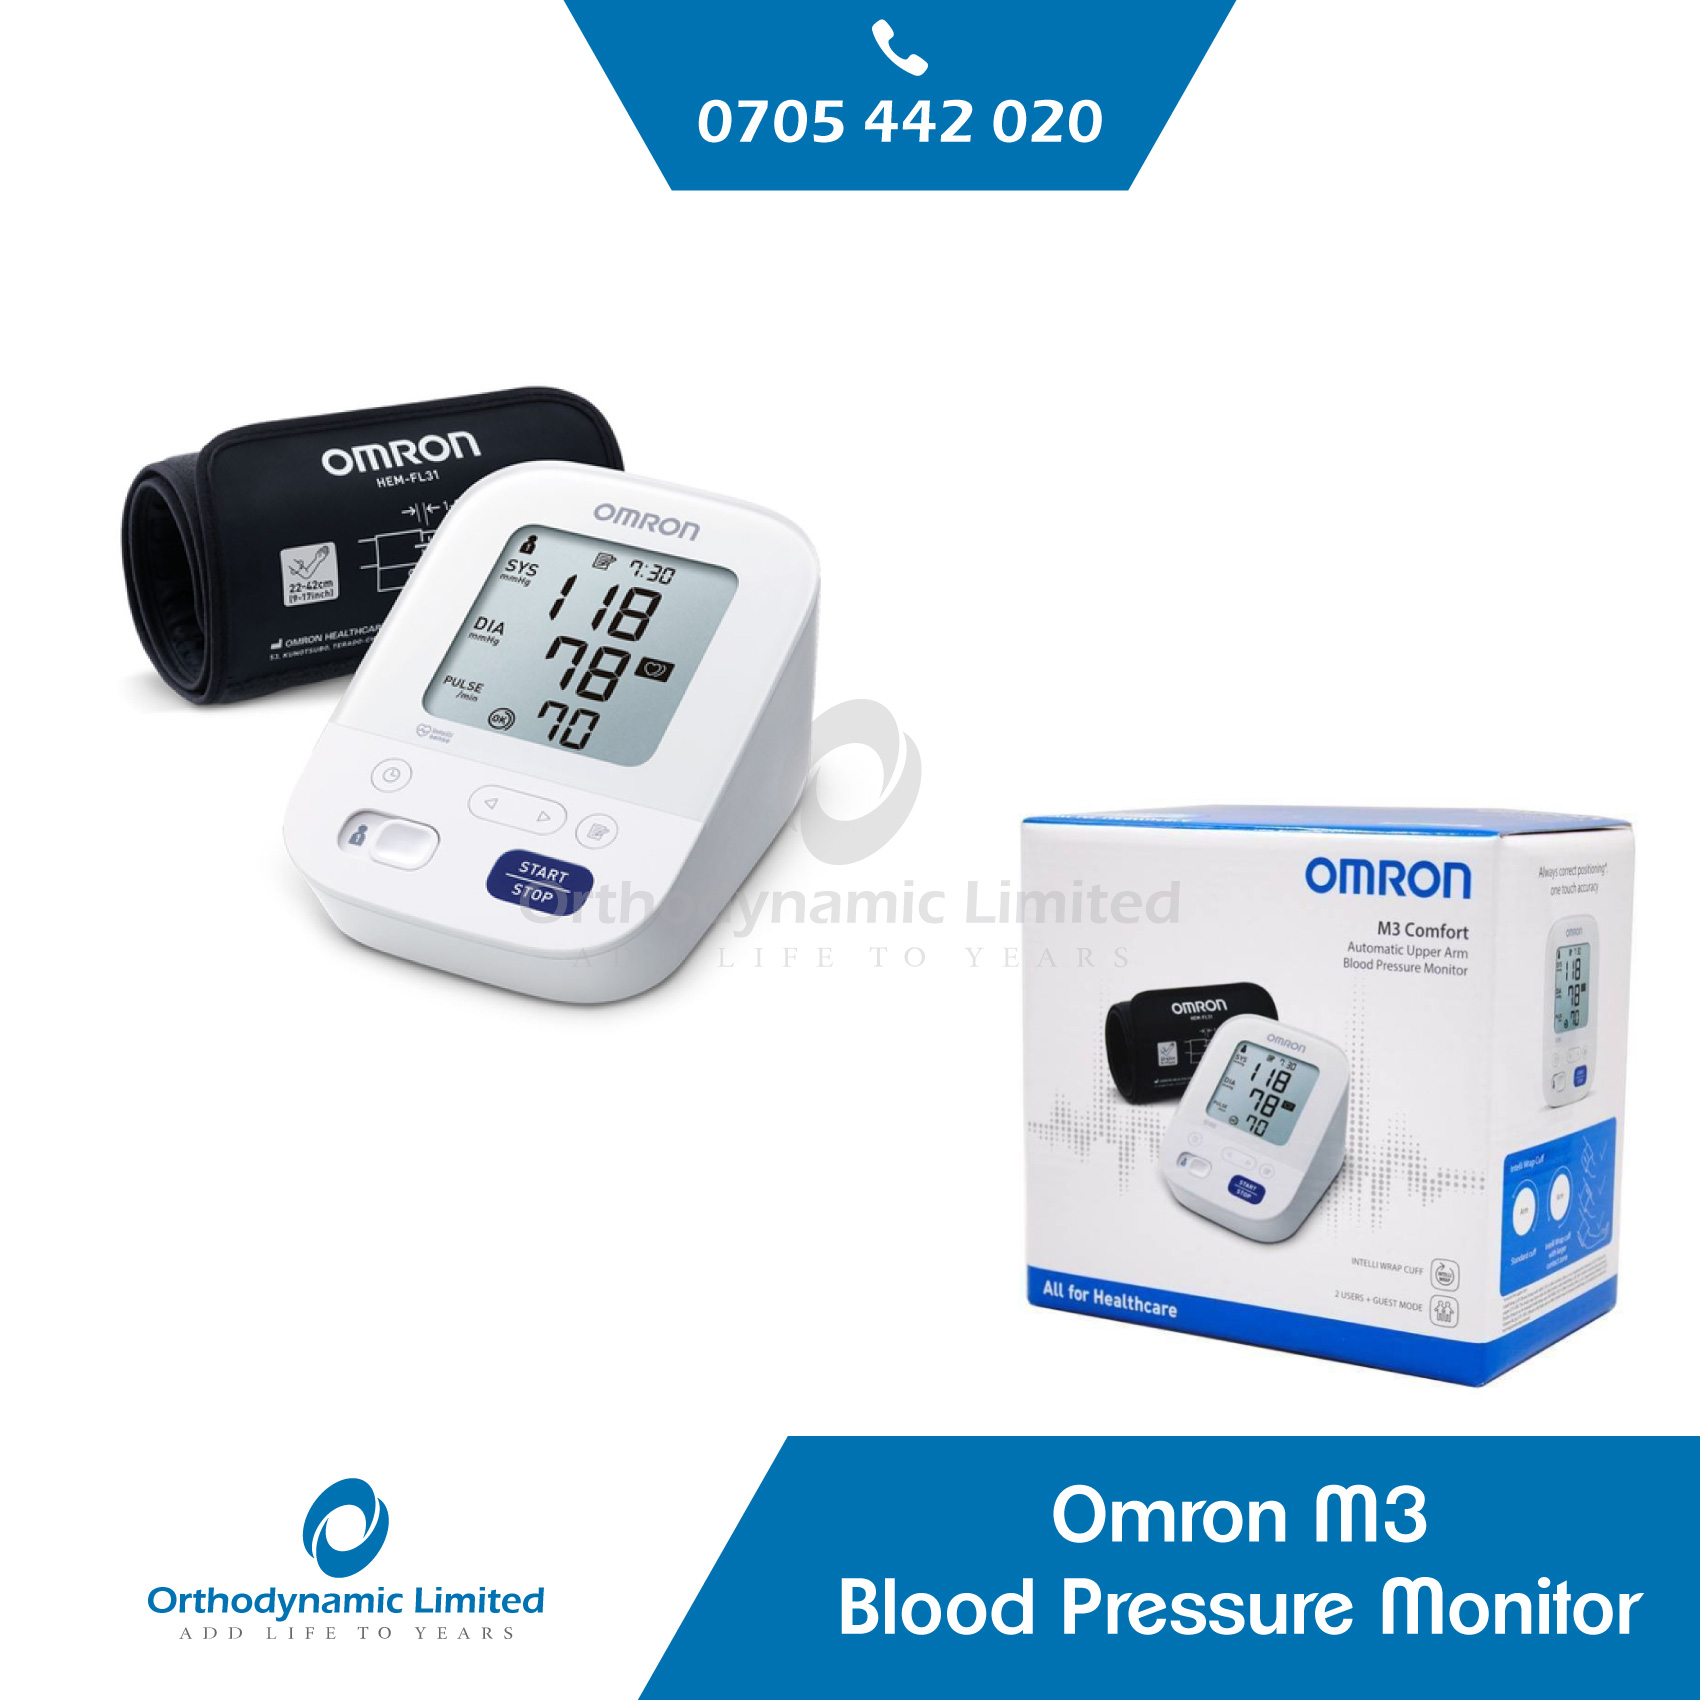 Omron M3 Blood Pressure Monitor - Orthodynamic Ltd - Call.0705442020